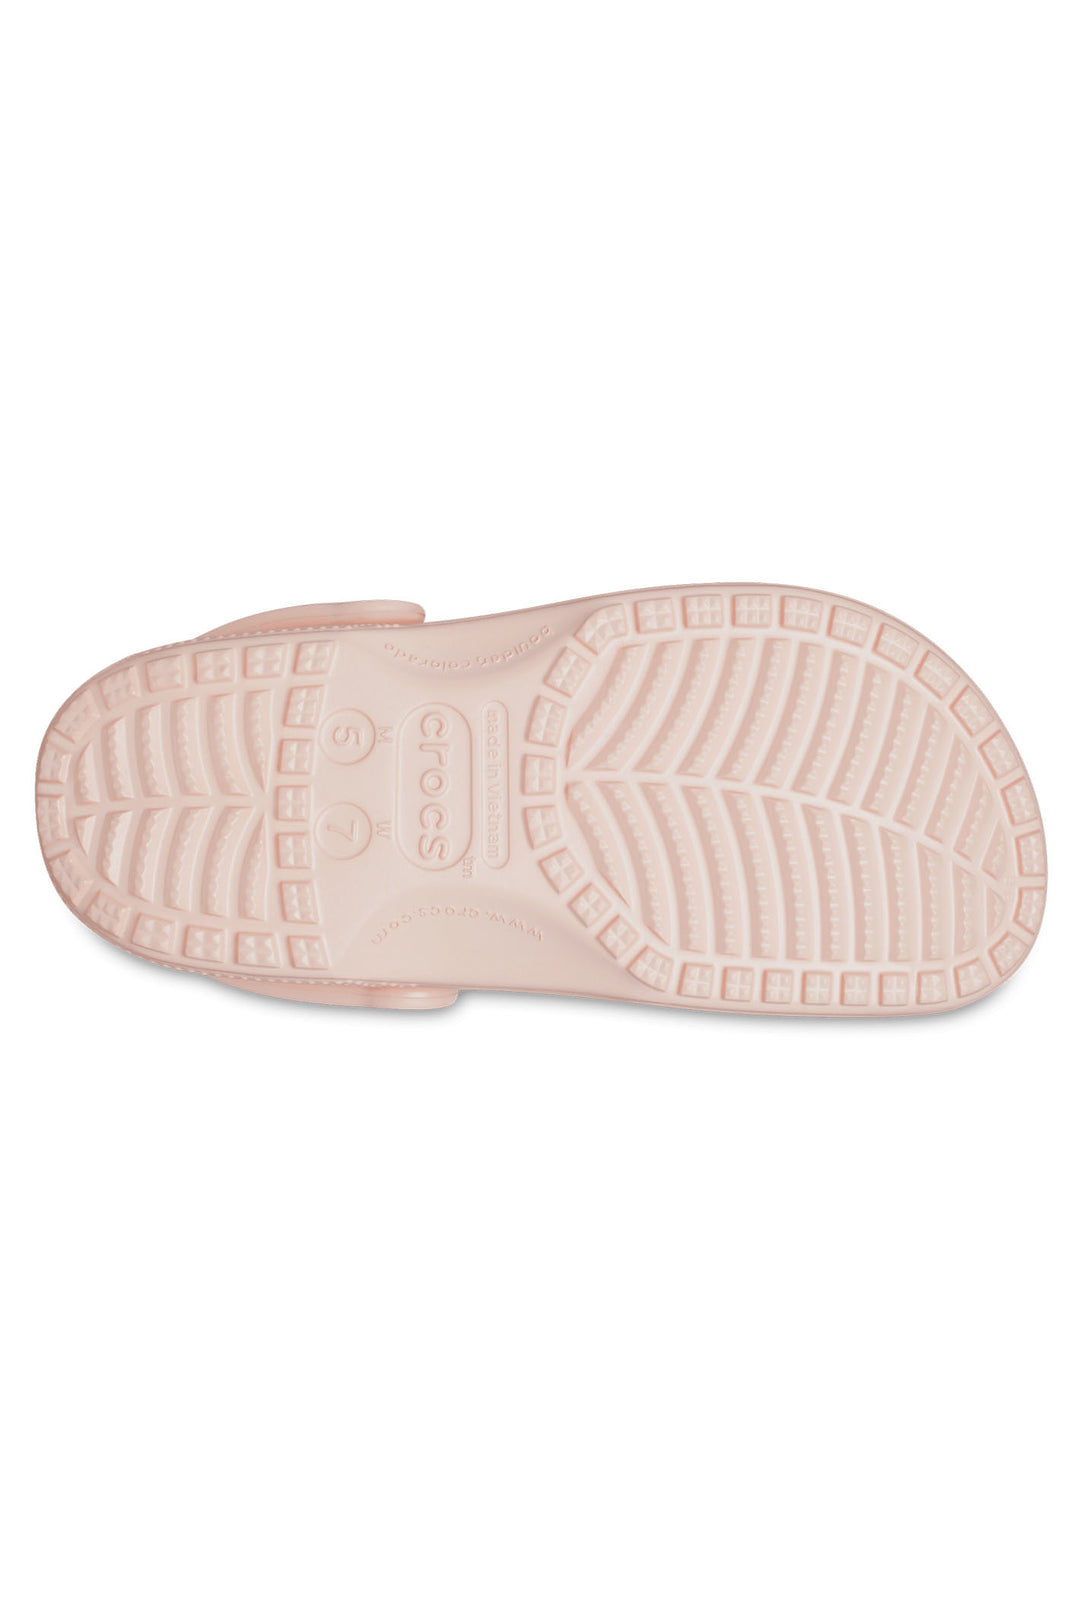 Crocs Classic 10001 Quartz Pink Clog - Shirley Allum Boutique